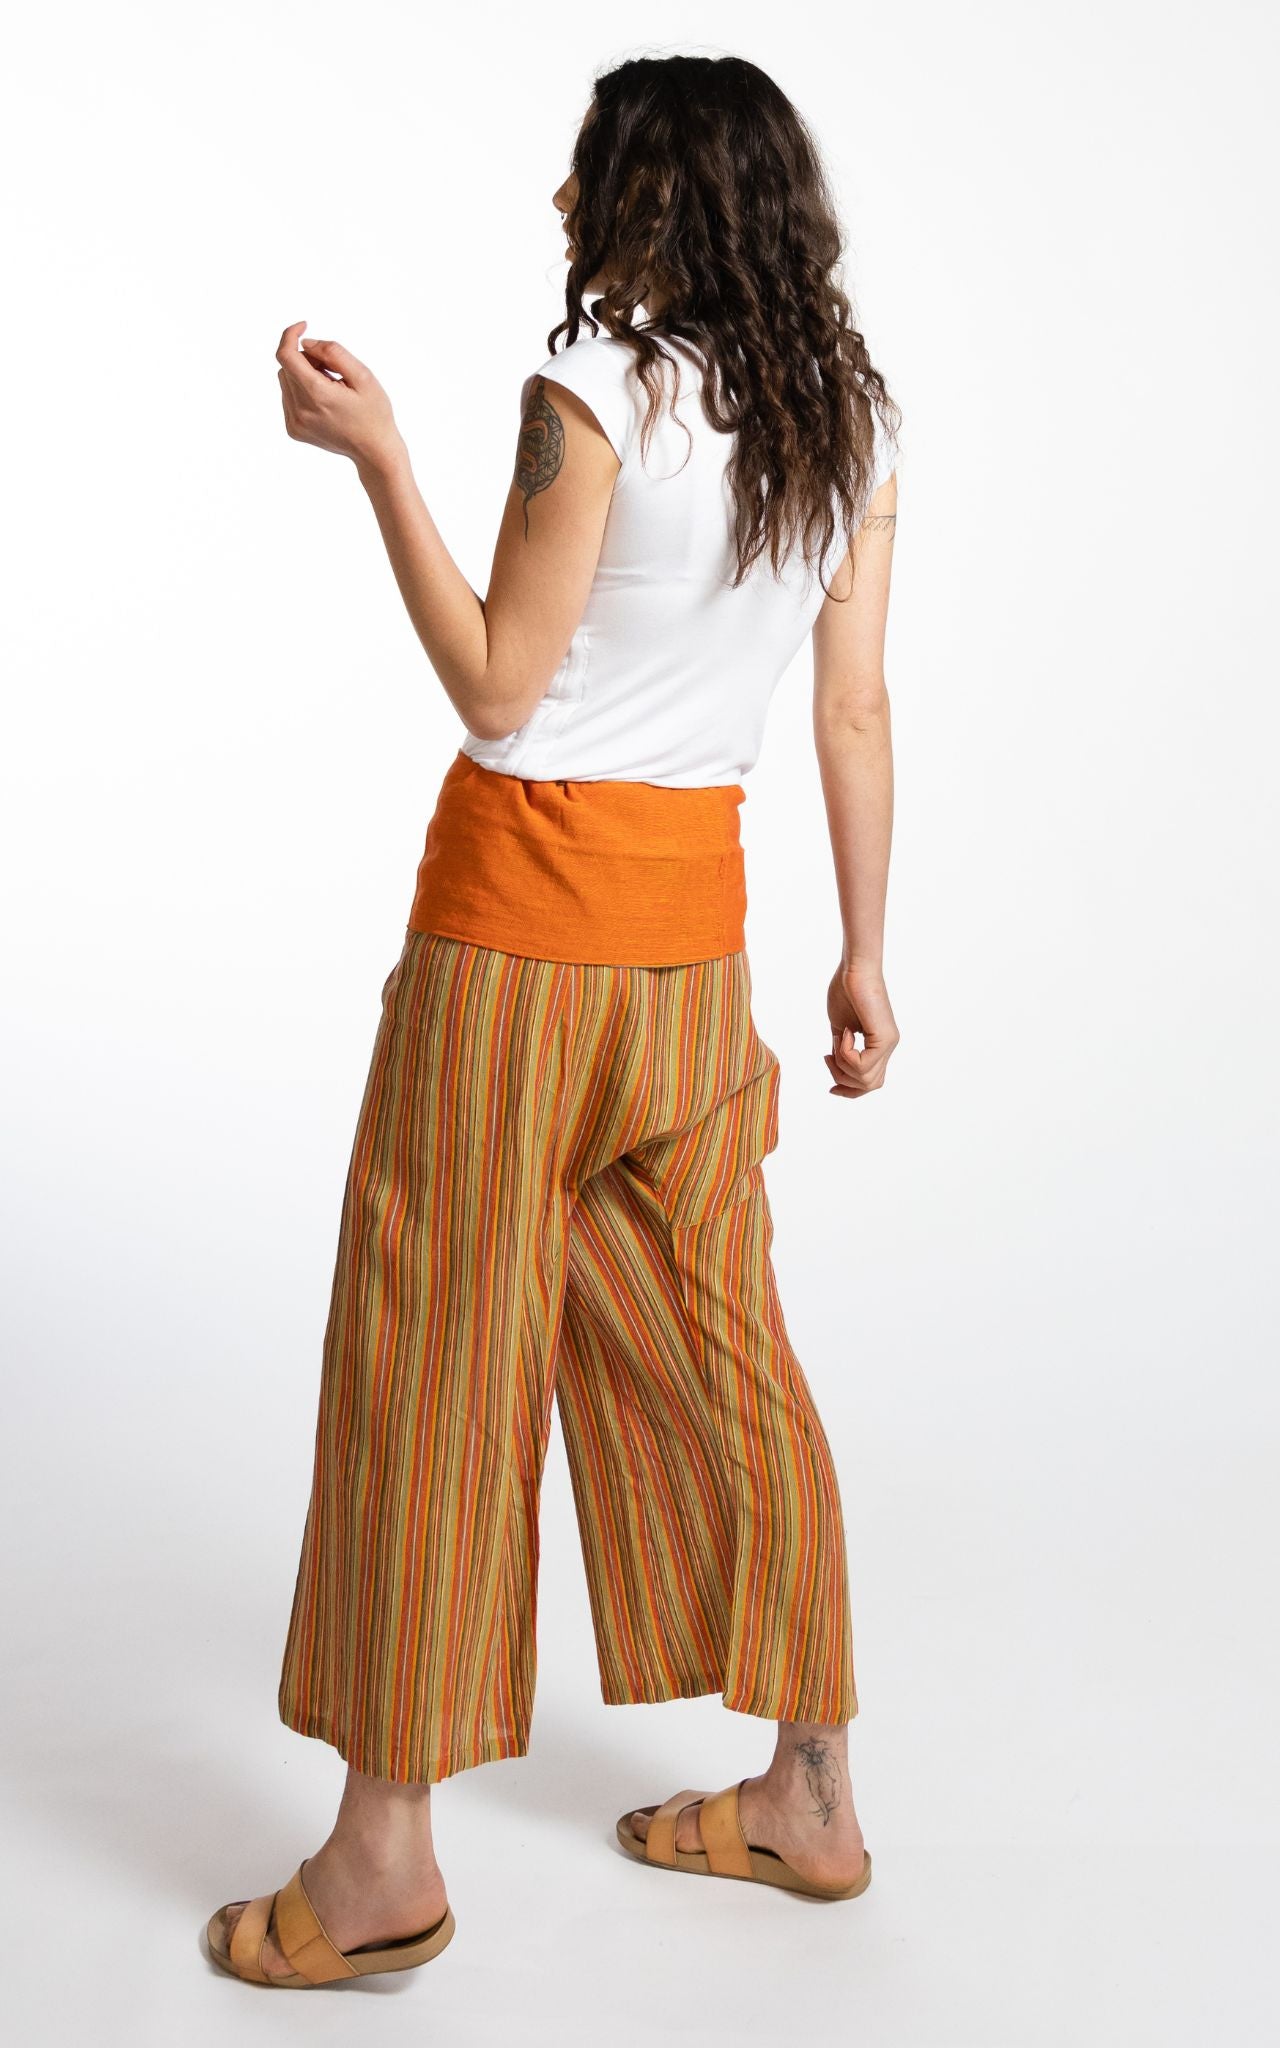 Surya Australia Ethical Cotton Thai Fisherman Pants - Striped Orange